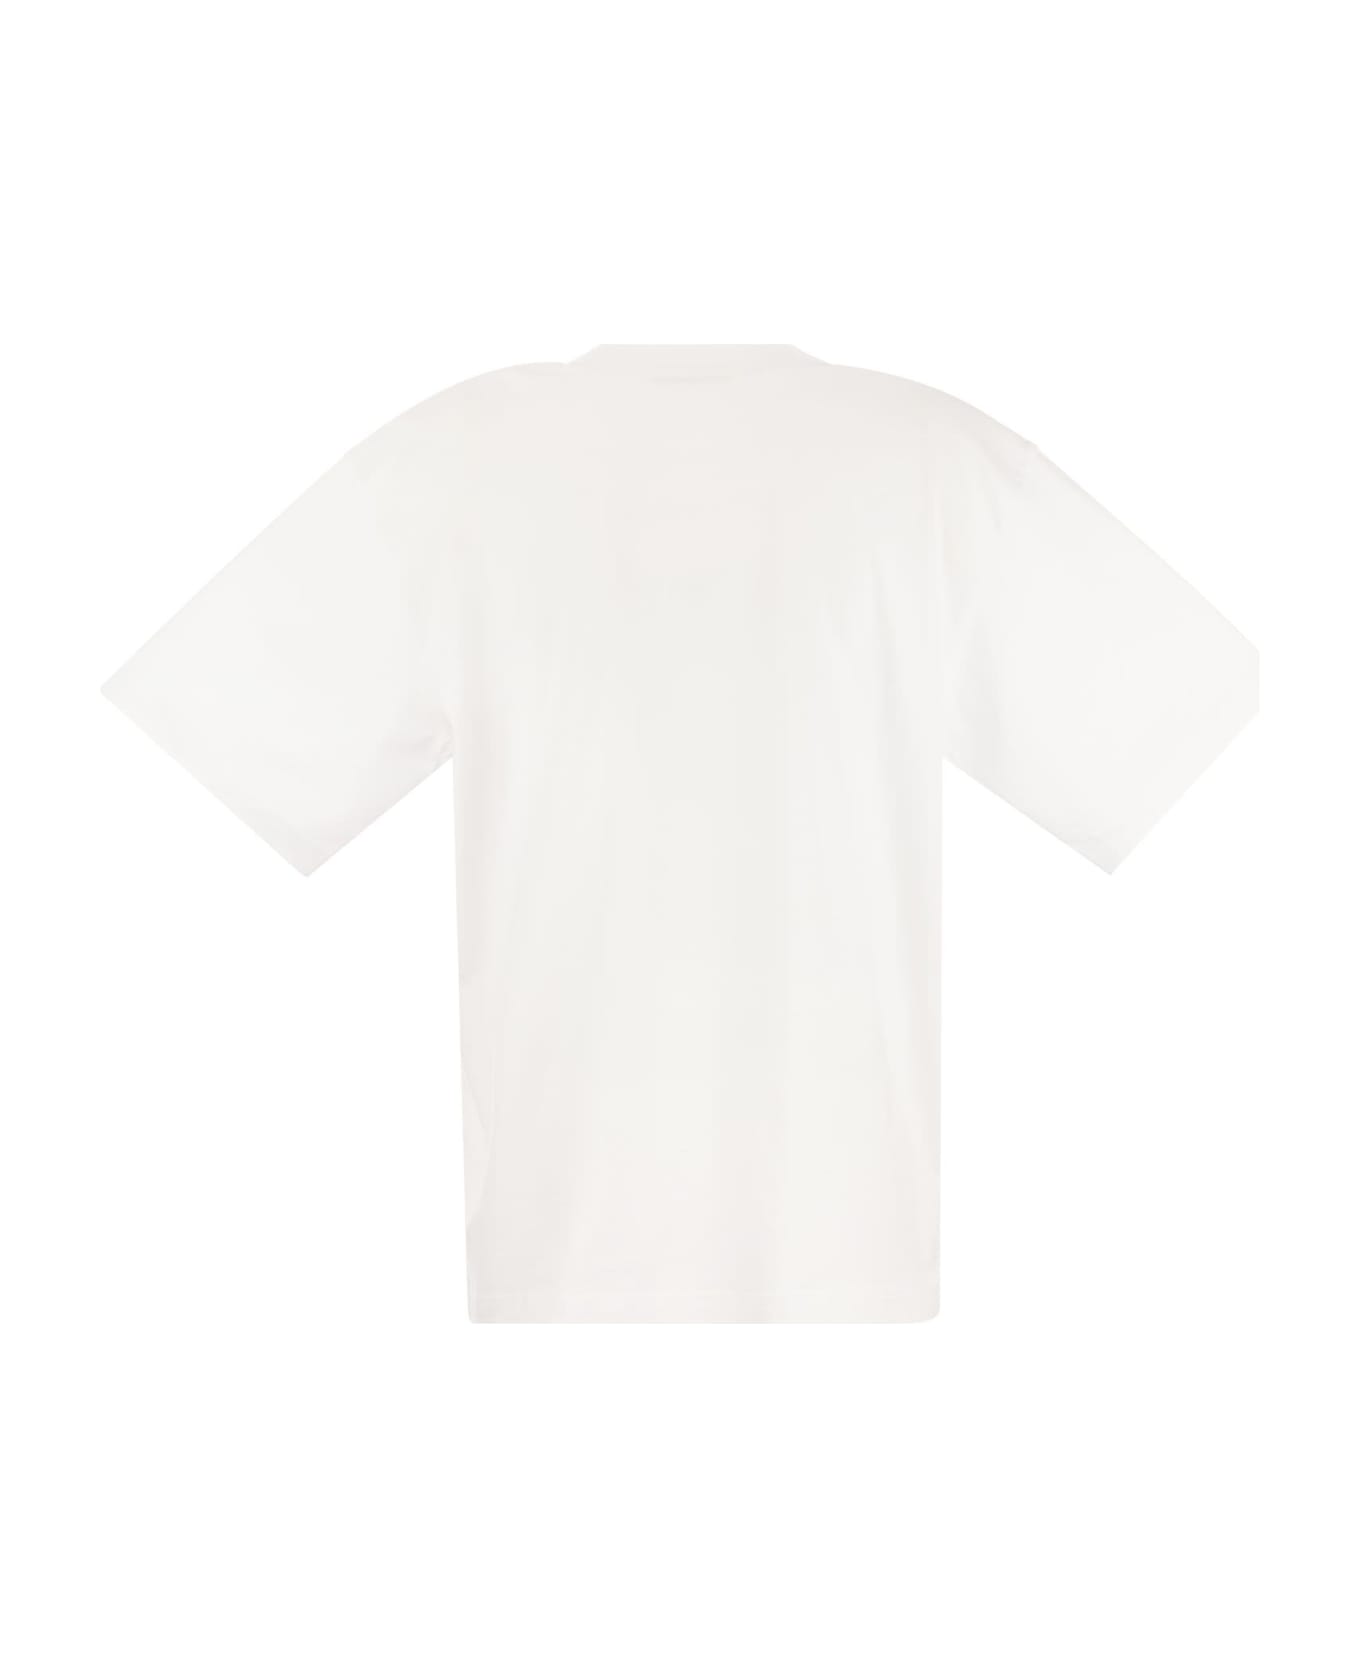 Marni Cotton Jersey T-shirt With Marni Print - White